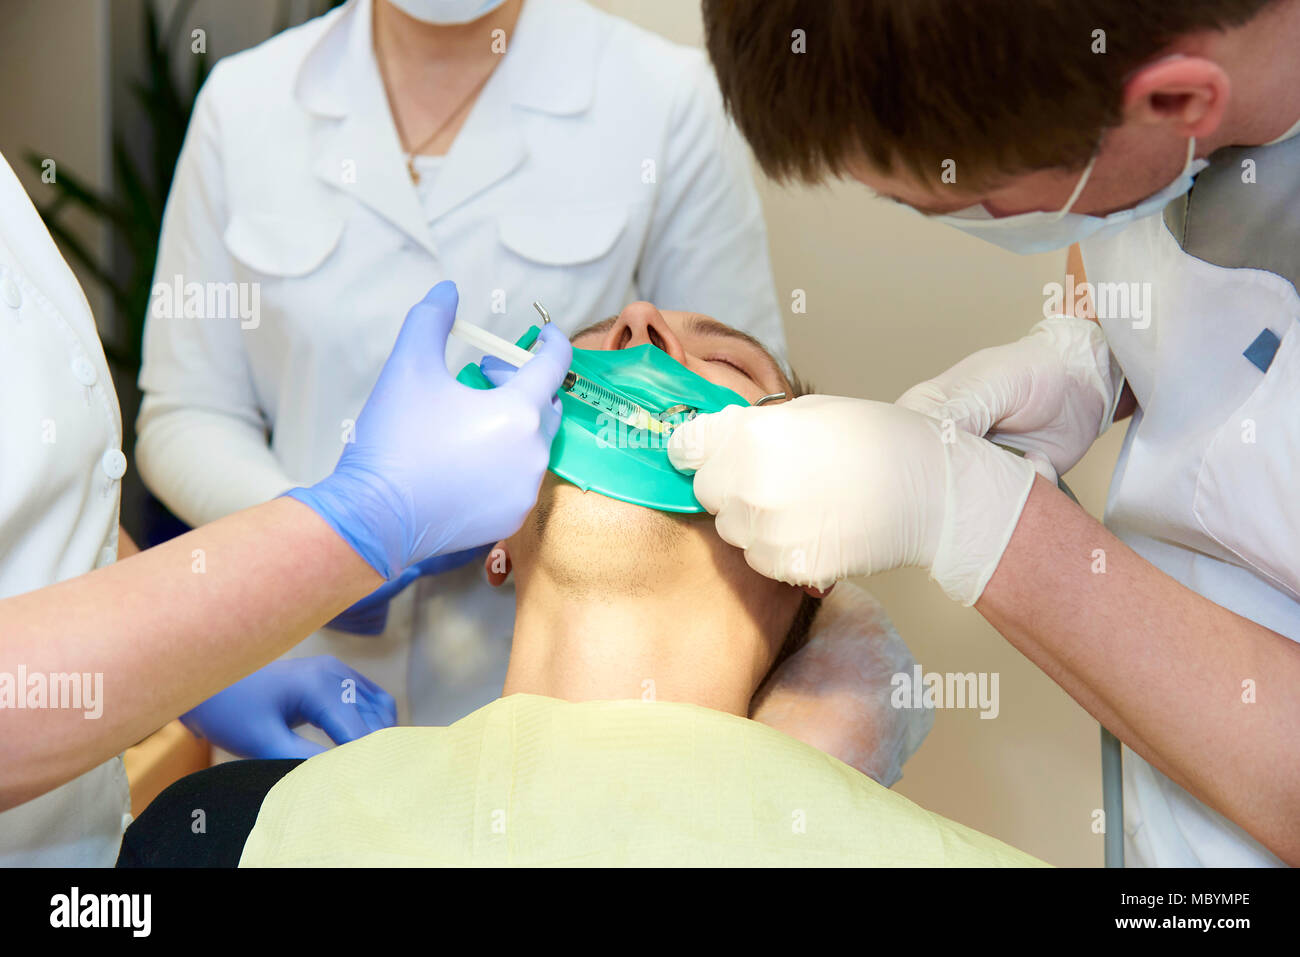 Un lattice piastra atta ad isolare il dente da trattare dal resto della cavità orale durante il trattamento. Il dentista fa iniezione di anestetico. Foto Stock